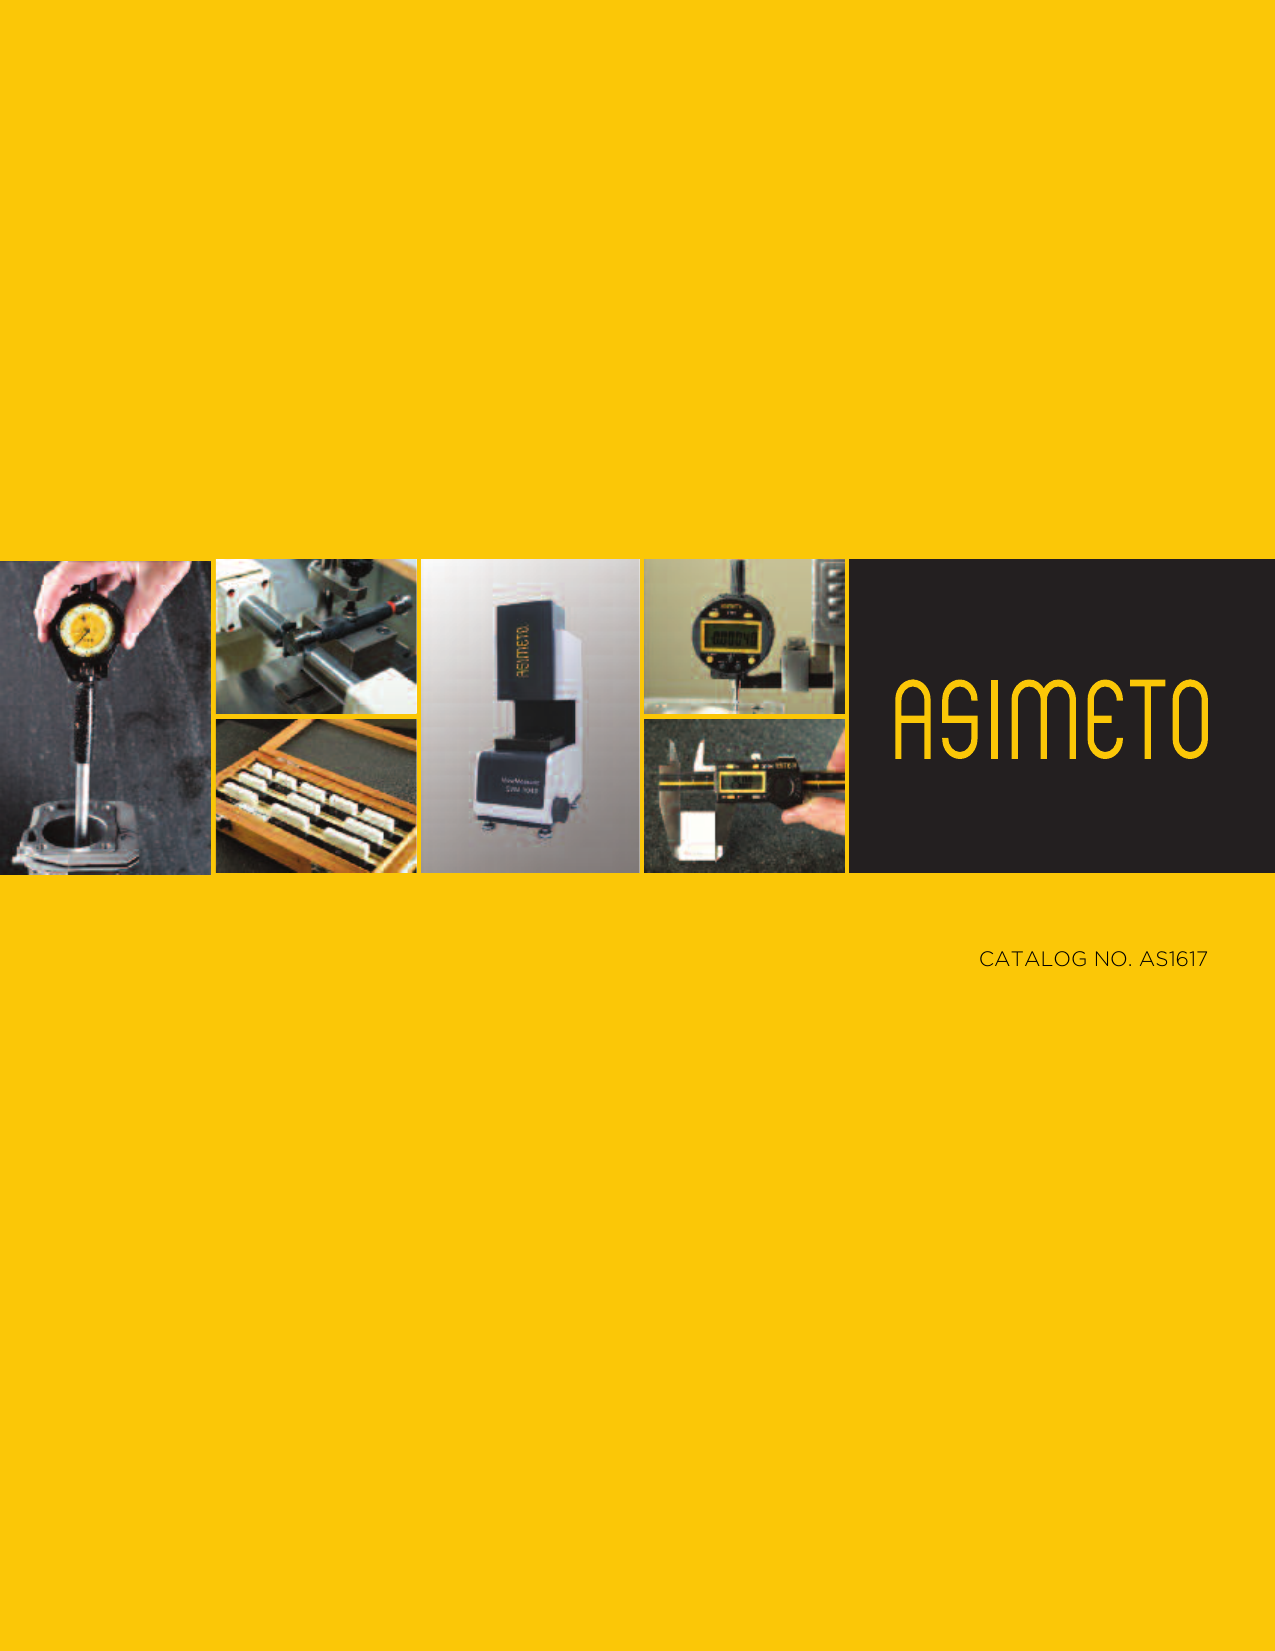 Asimeto 304-12-5 12 Extra Smooth Calibrated Dial Caliper 